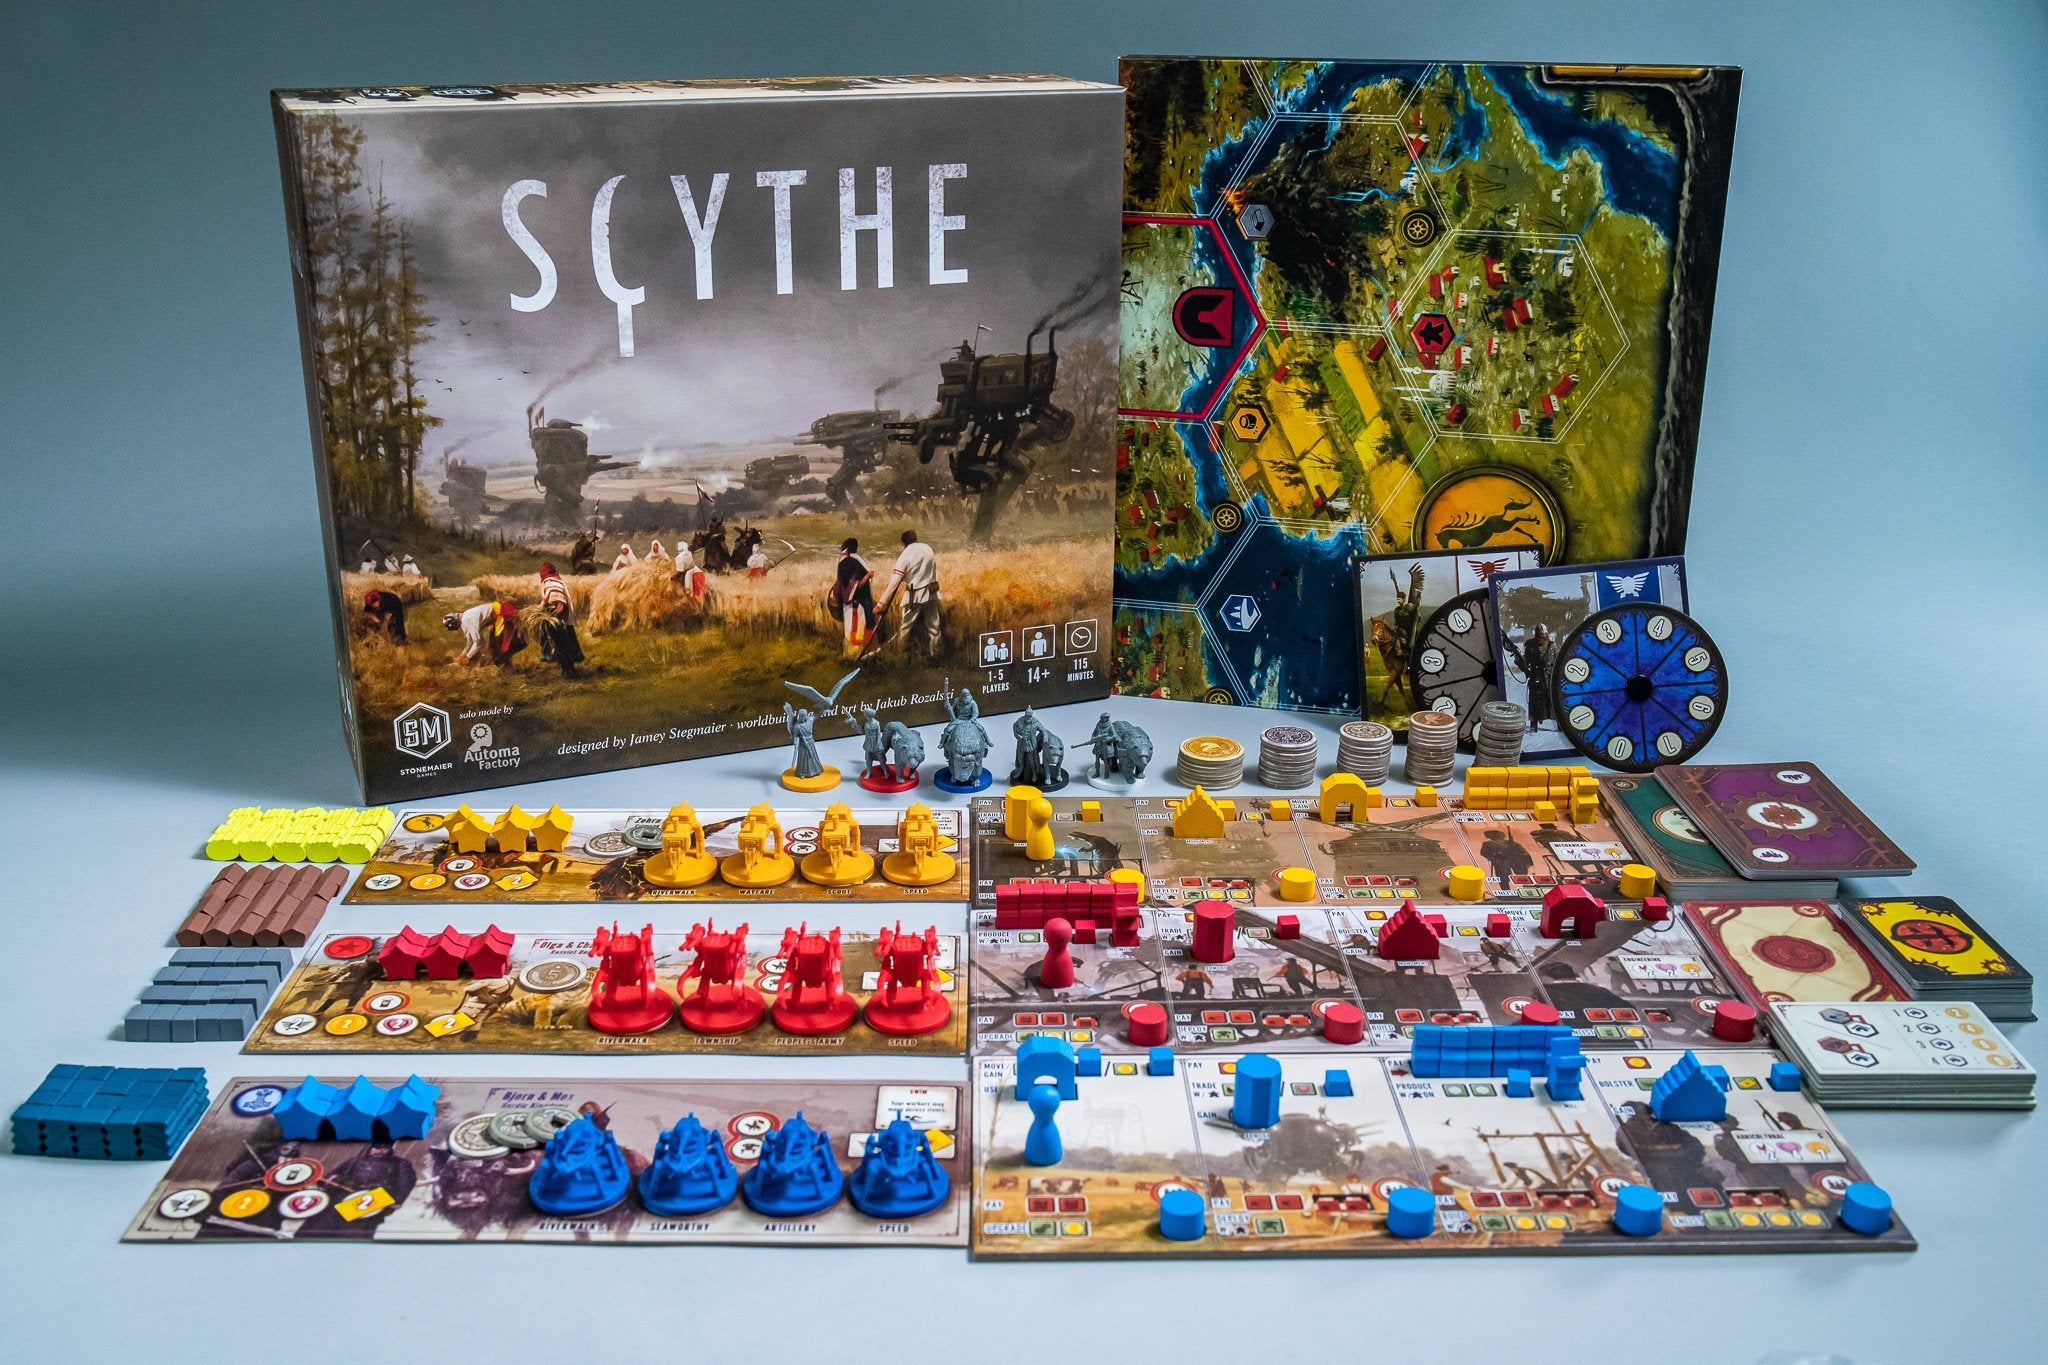 Scythe board and box